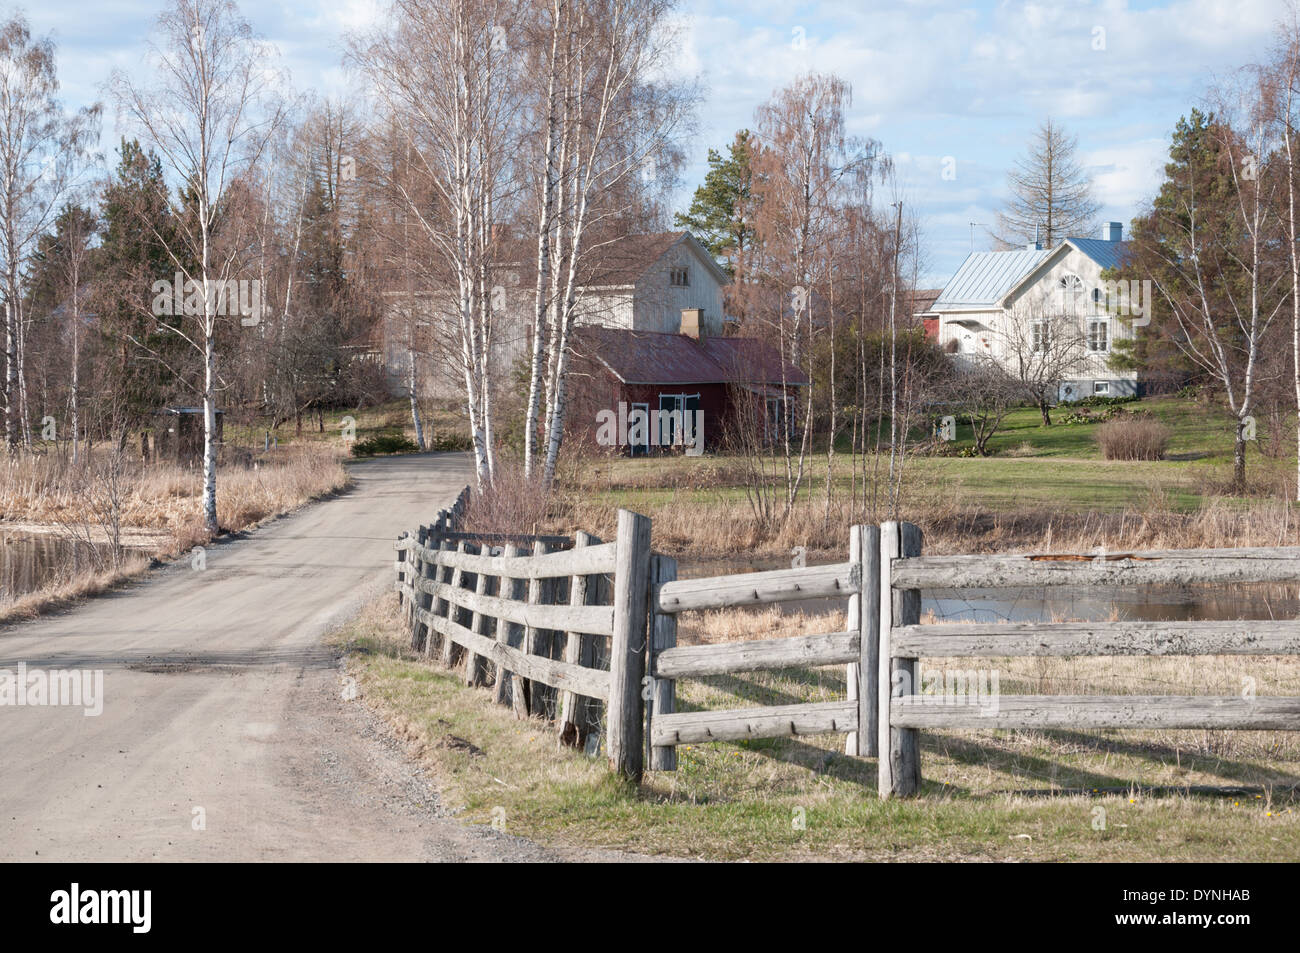 The Village of Kalliala near Vammala Finland Stock Photo